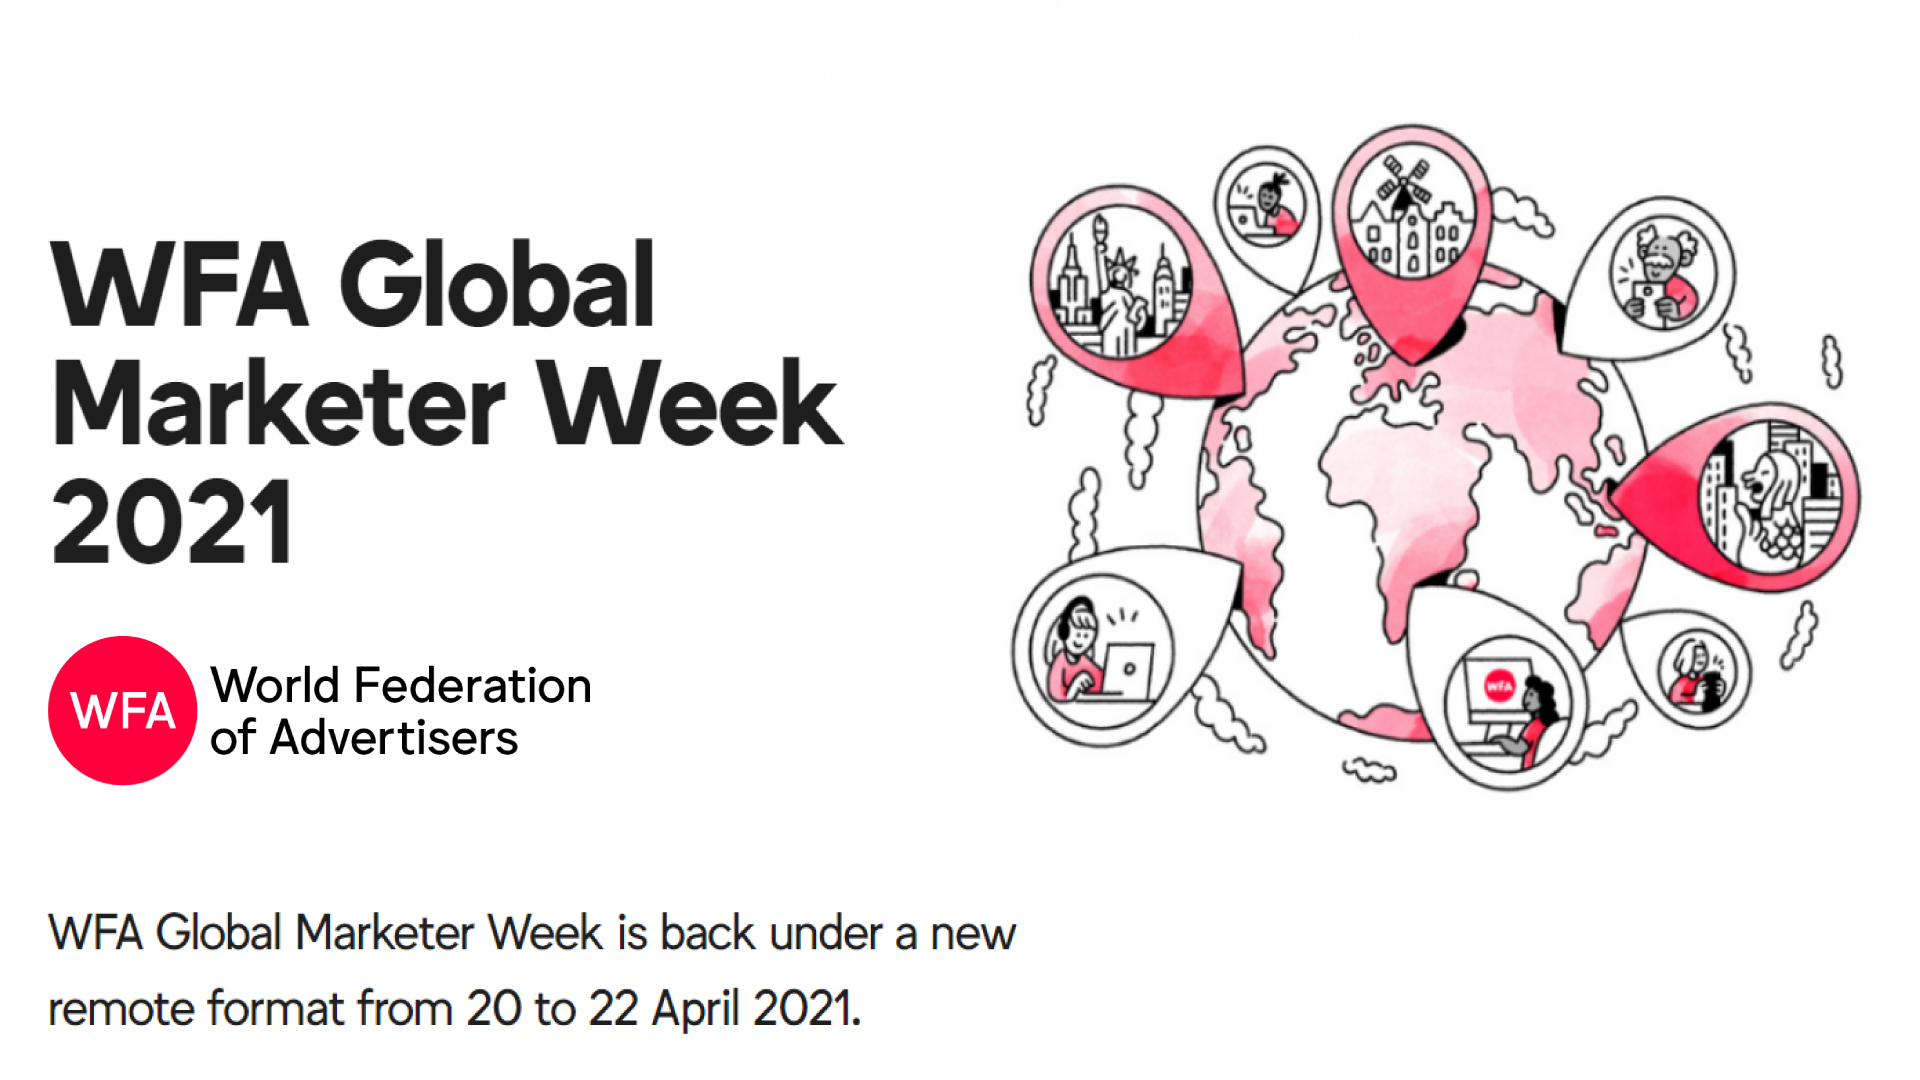 WFA-Global-Marketer-Week-2021-visuel.jpg